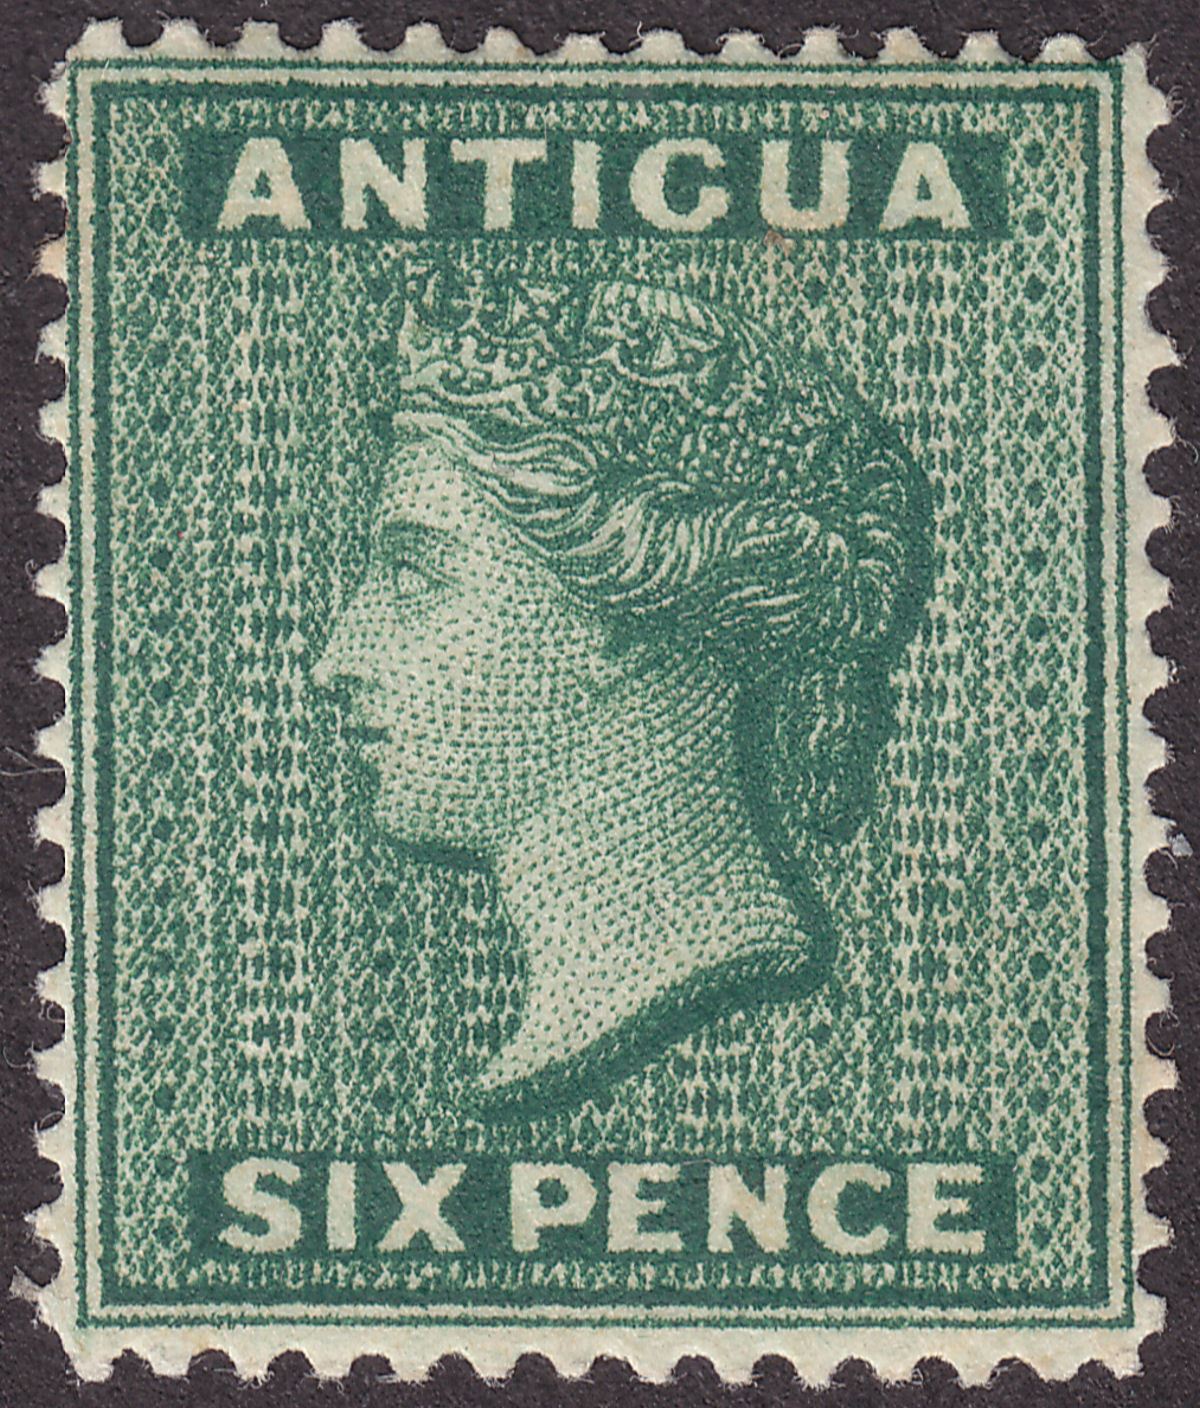 Antigua 1884 QV wmk CA 6d Deep Green Mint SG29 cat £60